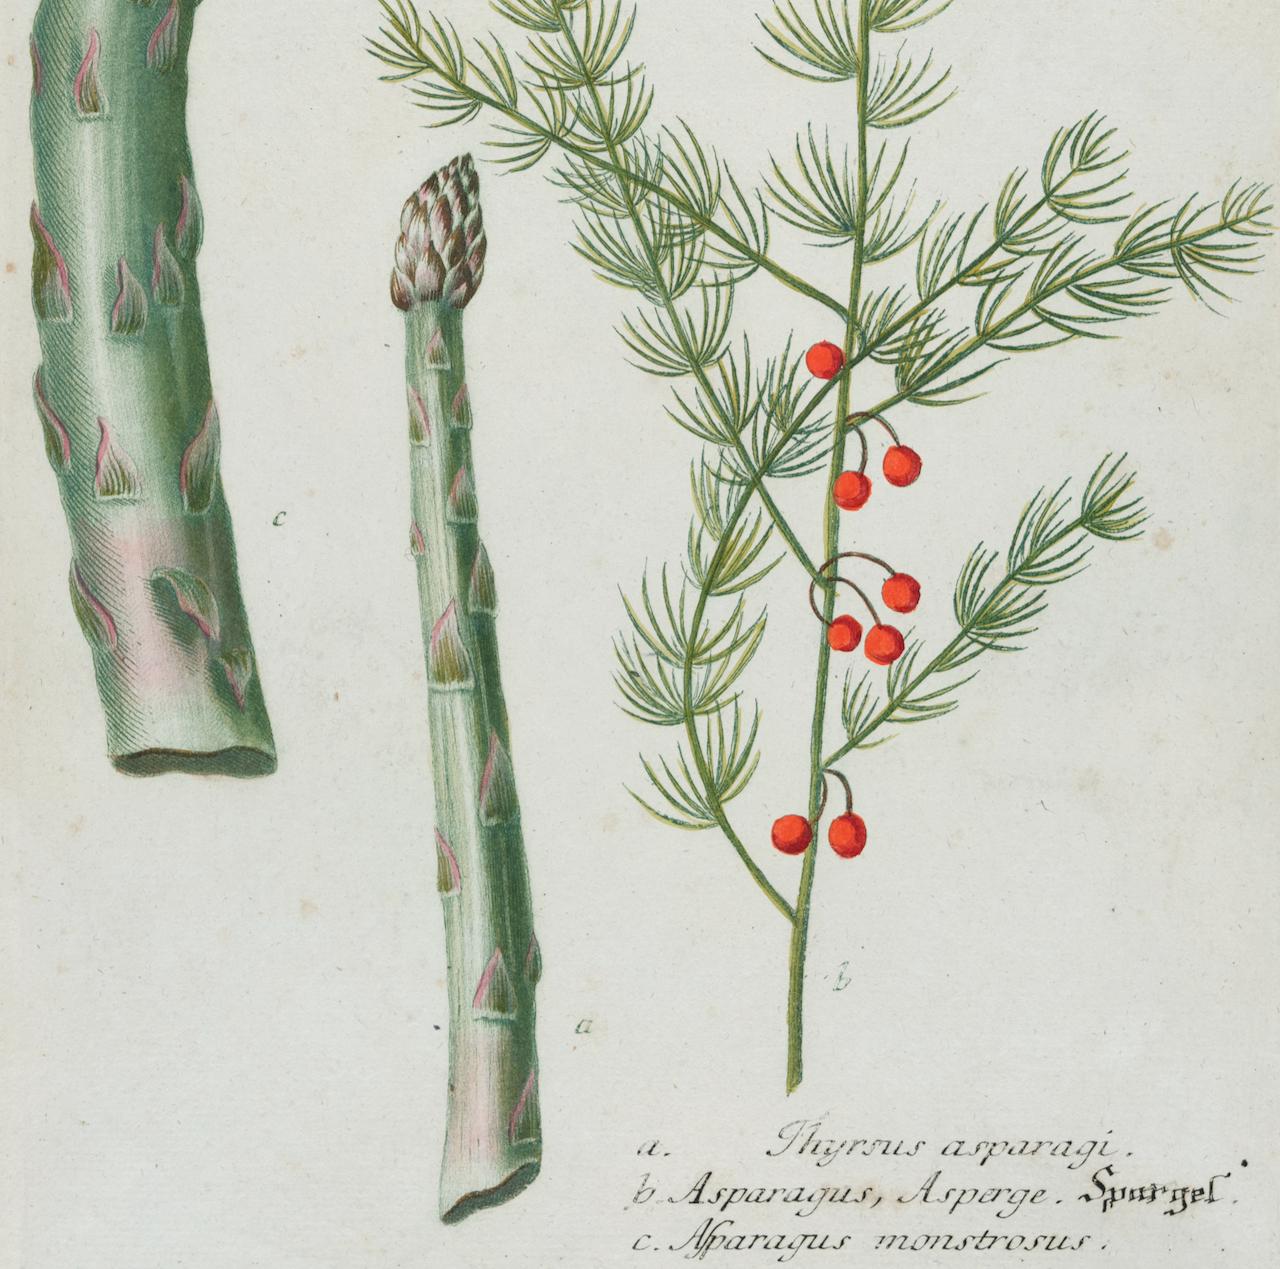 Dieser kolorierte botanische Schabkunst- und Linienstich mit Handkolorierung von Johann Wilhelm Weinmann (1683-1741) trägt den Titel a. Thyrsus asparagi. b. Asparagus, Asperge. c. Asparagus monstrosus (Spargel)